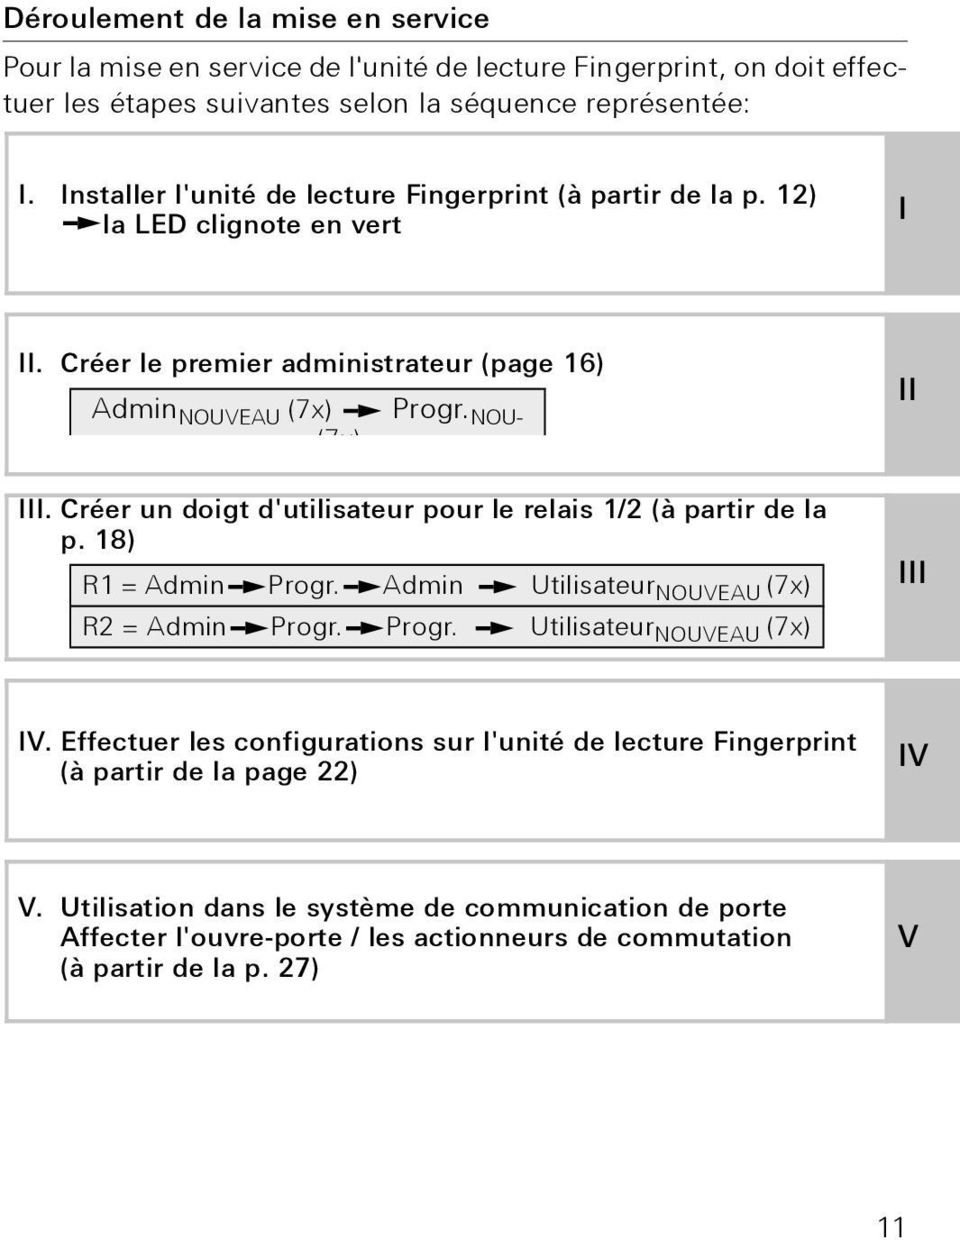 Créer un doigt d'utilisateur pour le relais 1/ (à partir de la p. 18) R1 = Admin Progr. Admin Utilisateur NOUVEAU (7x) R = Admin Progr. Progr. Utilisateur NOUVEAU (7x) II III IV.